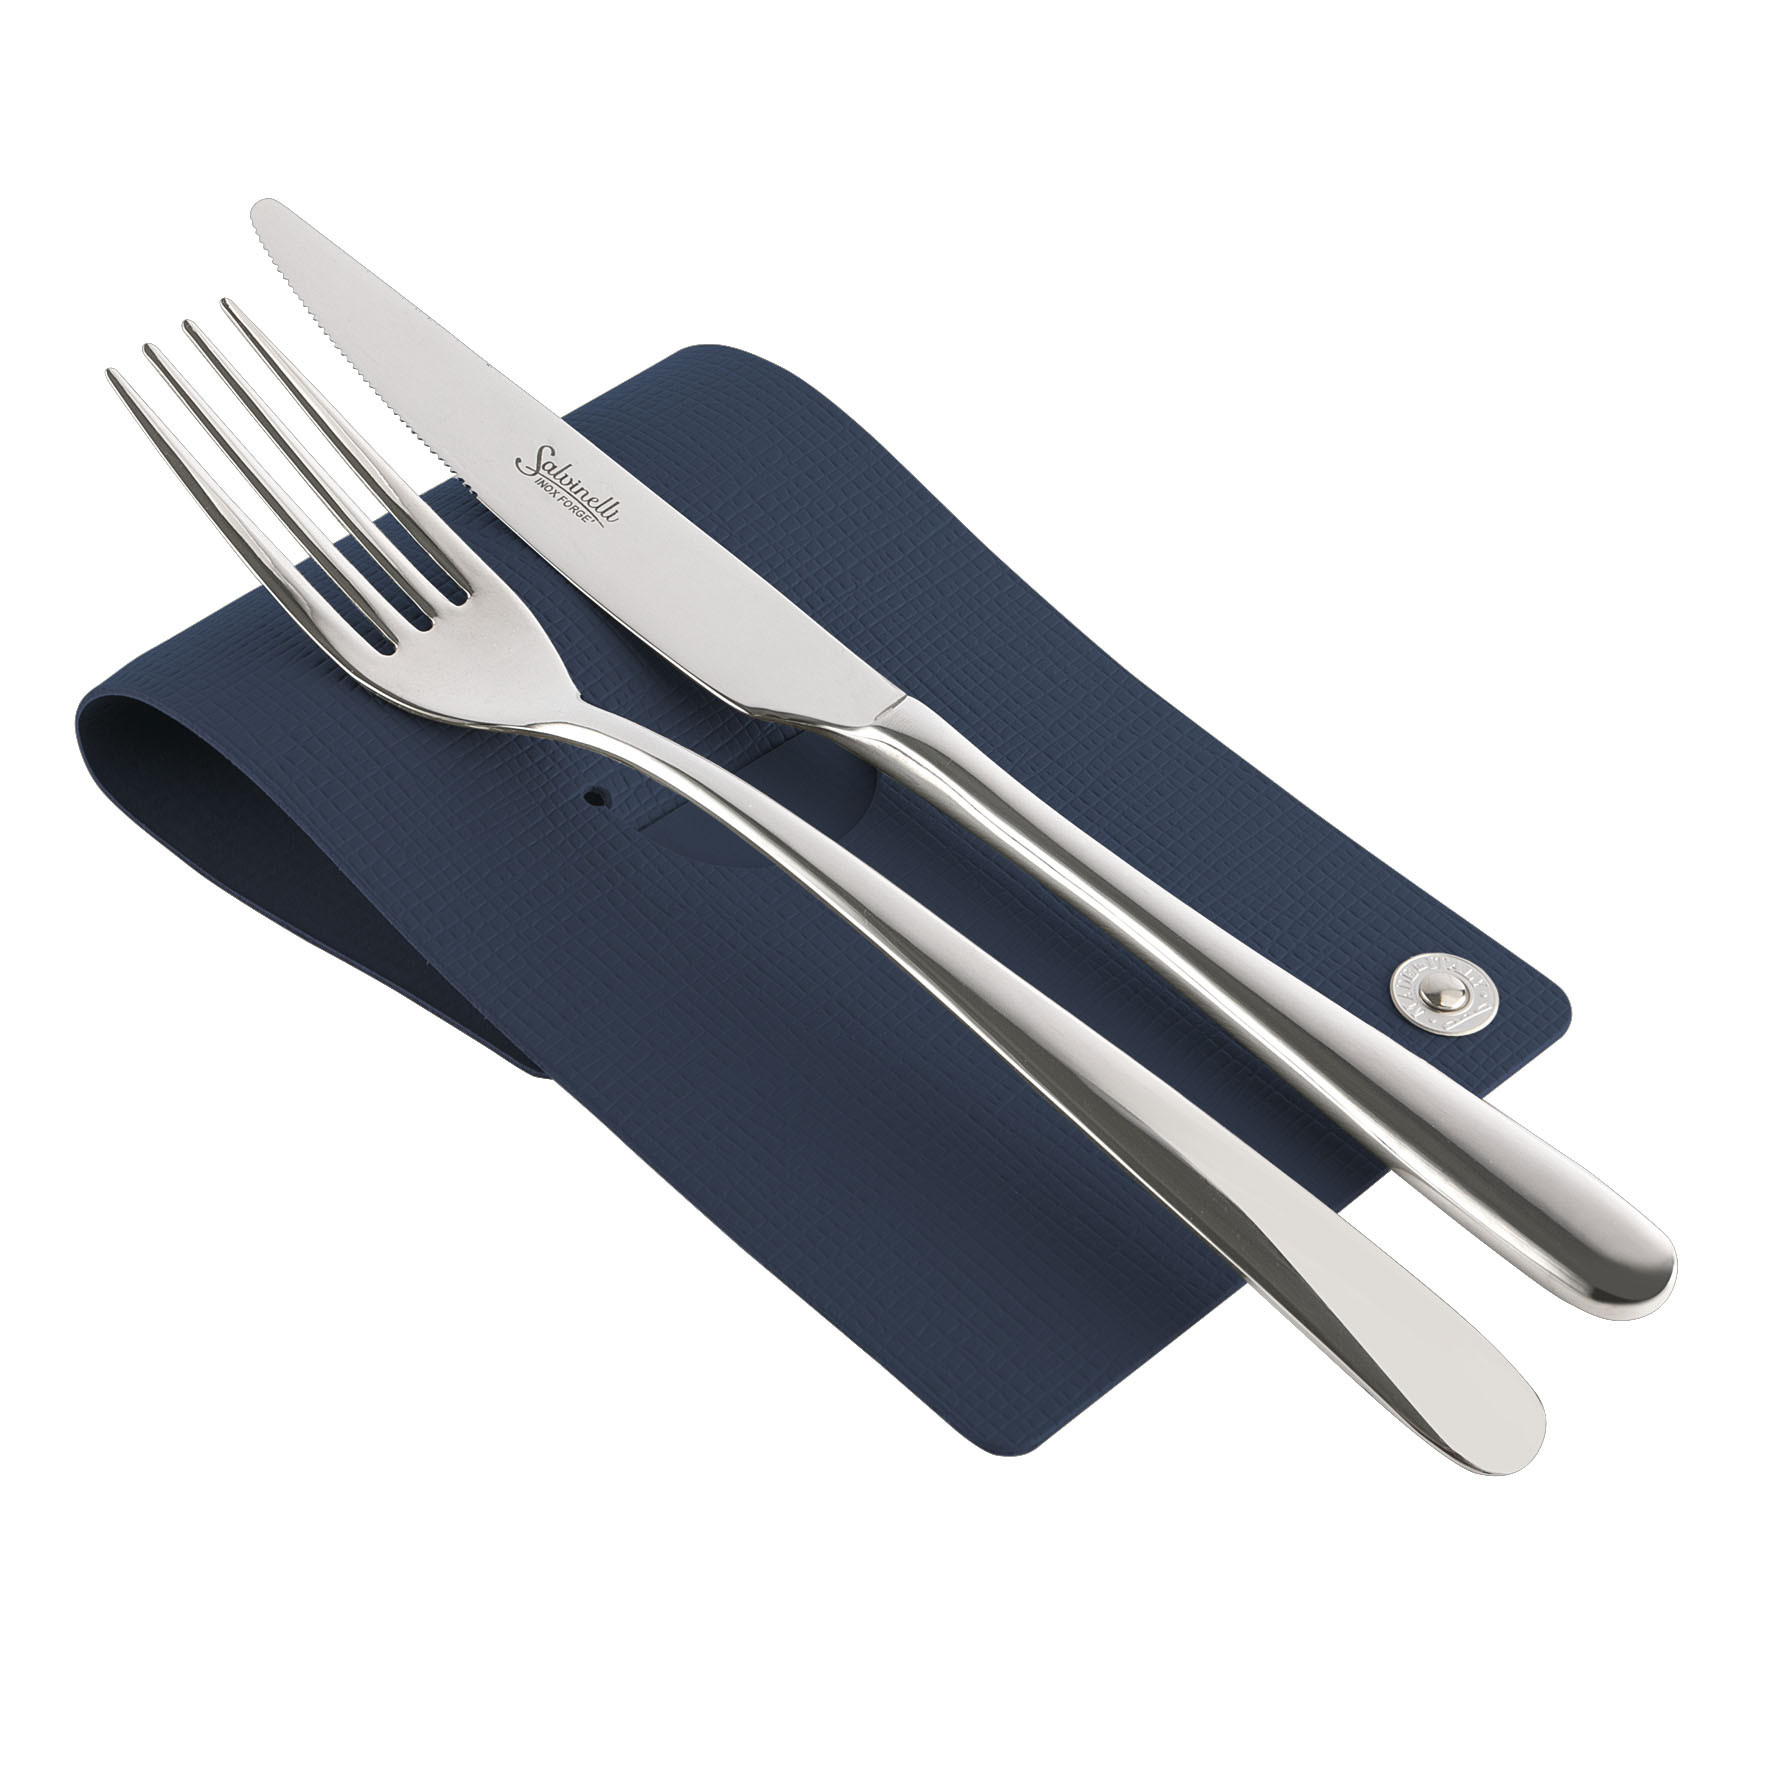 Cutlery rest poggia posate chef blu - Poggia posate